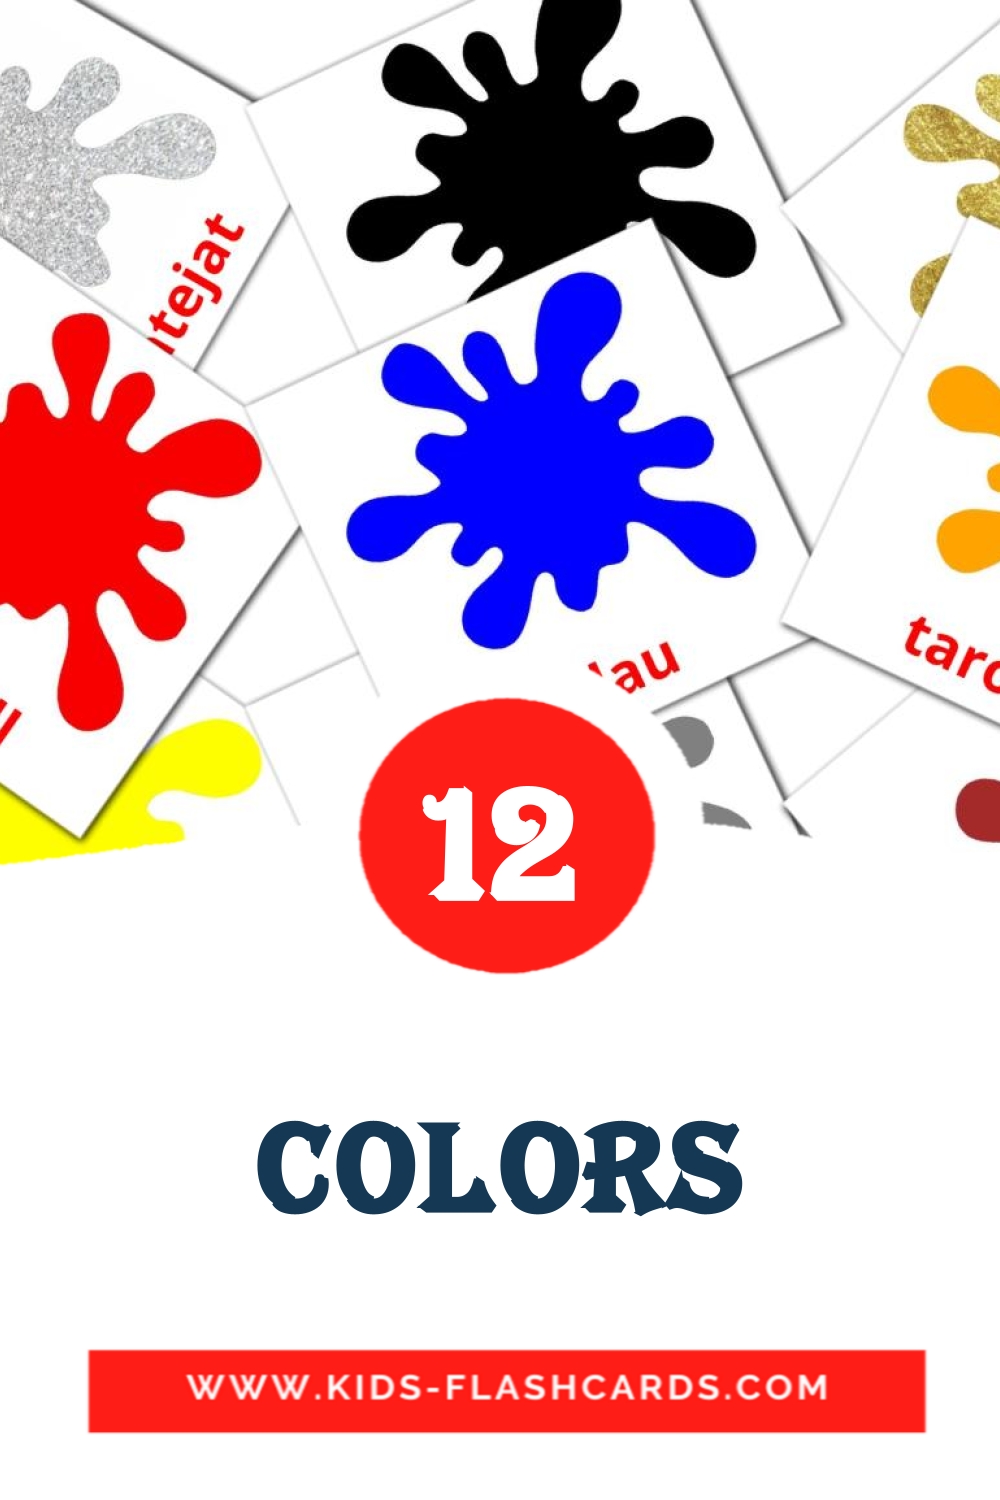 Colors на каталонском для Детского Сада (12 карточек)